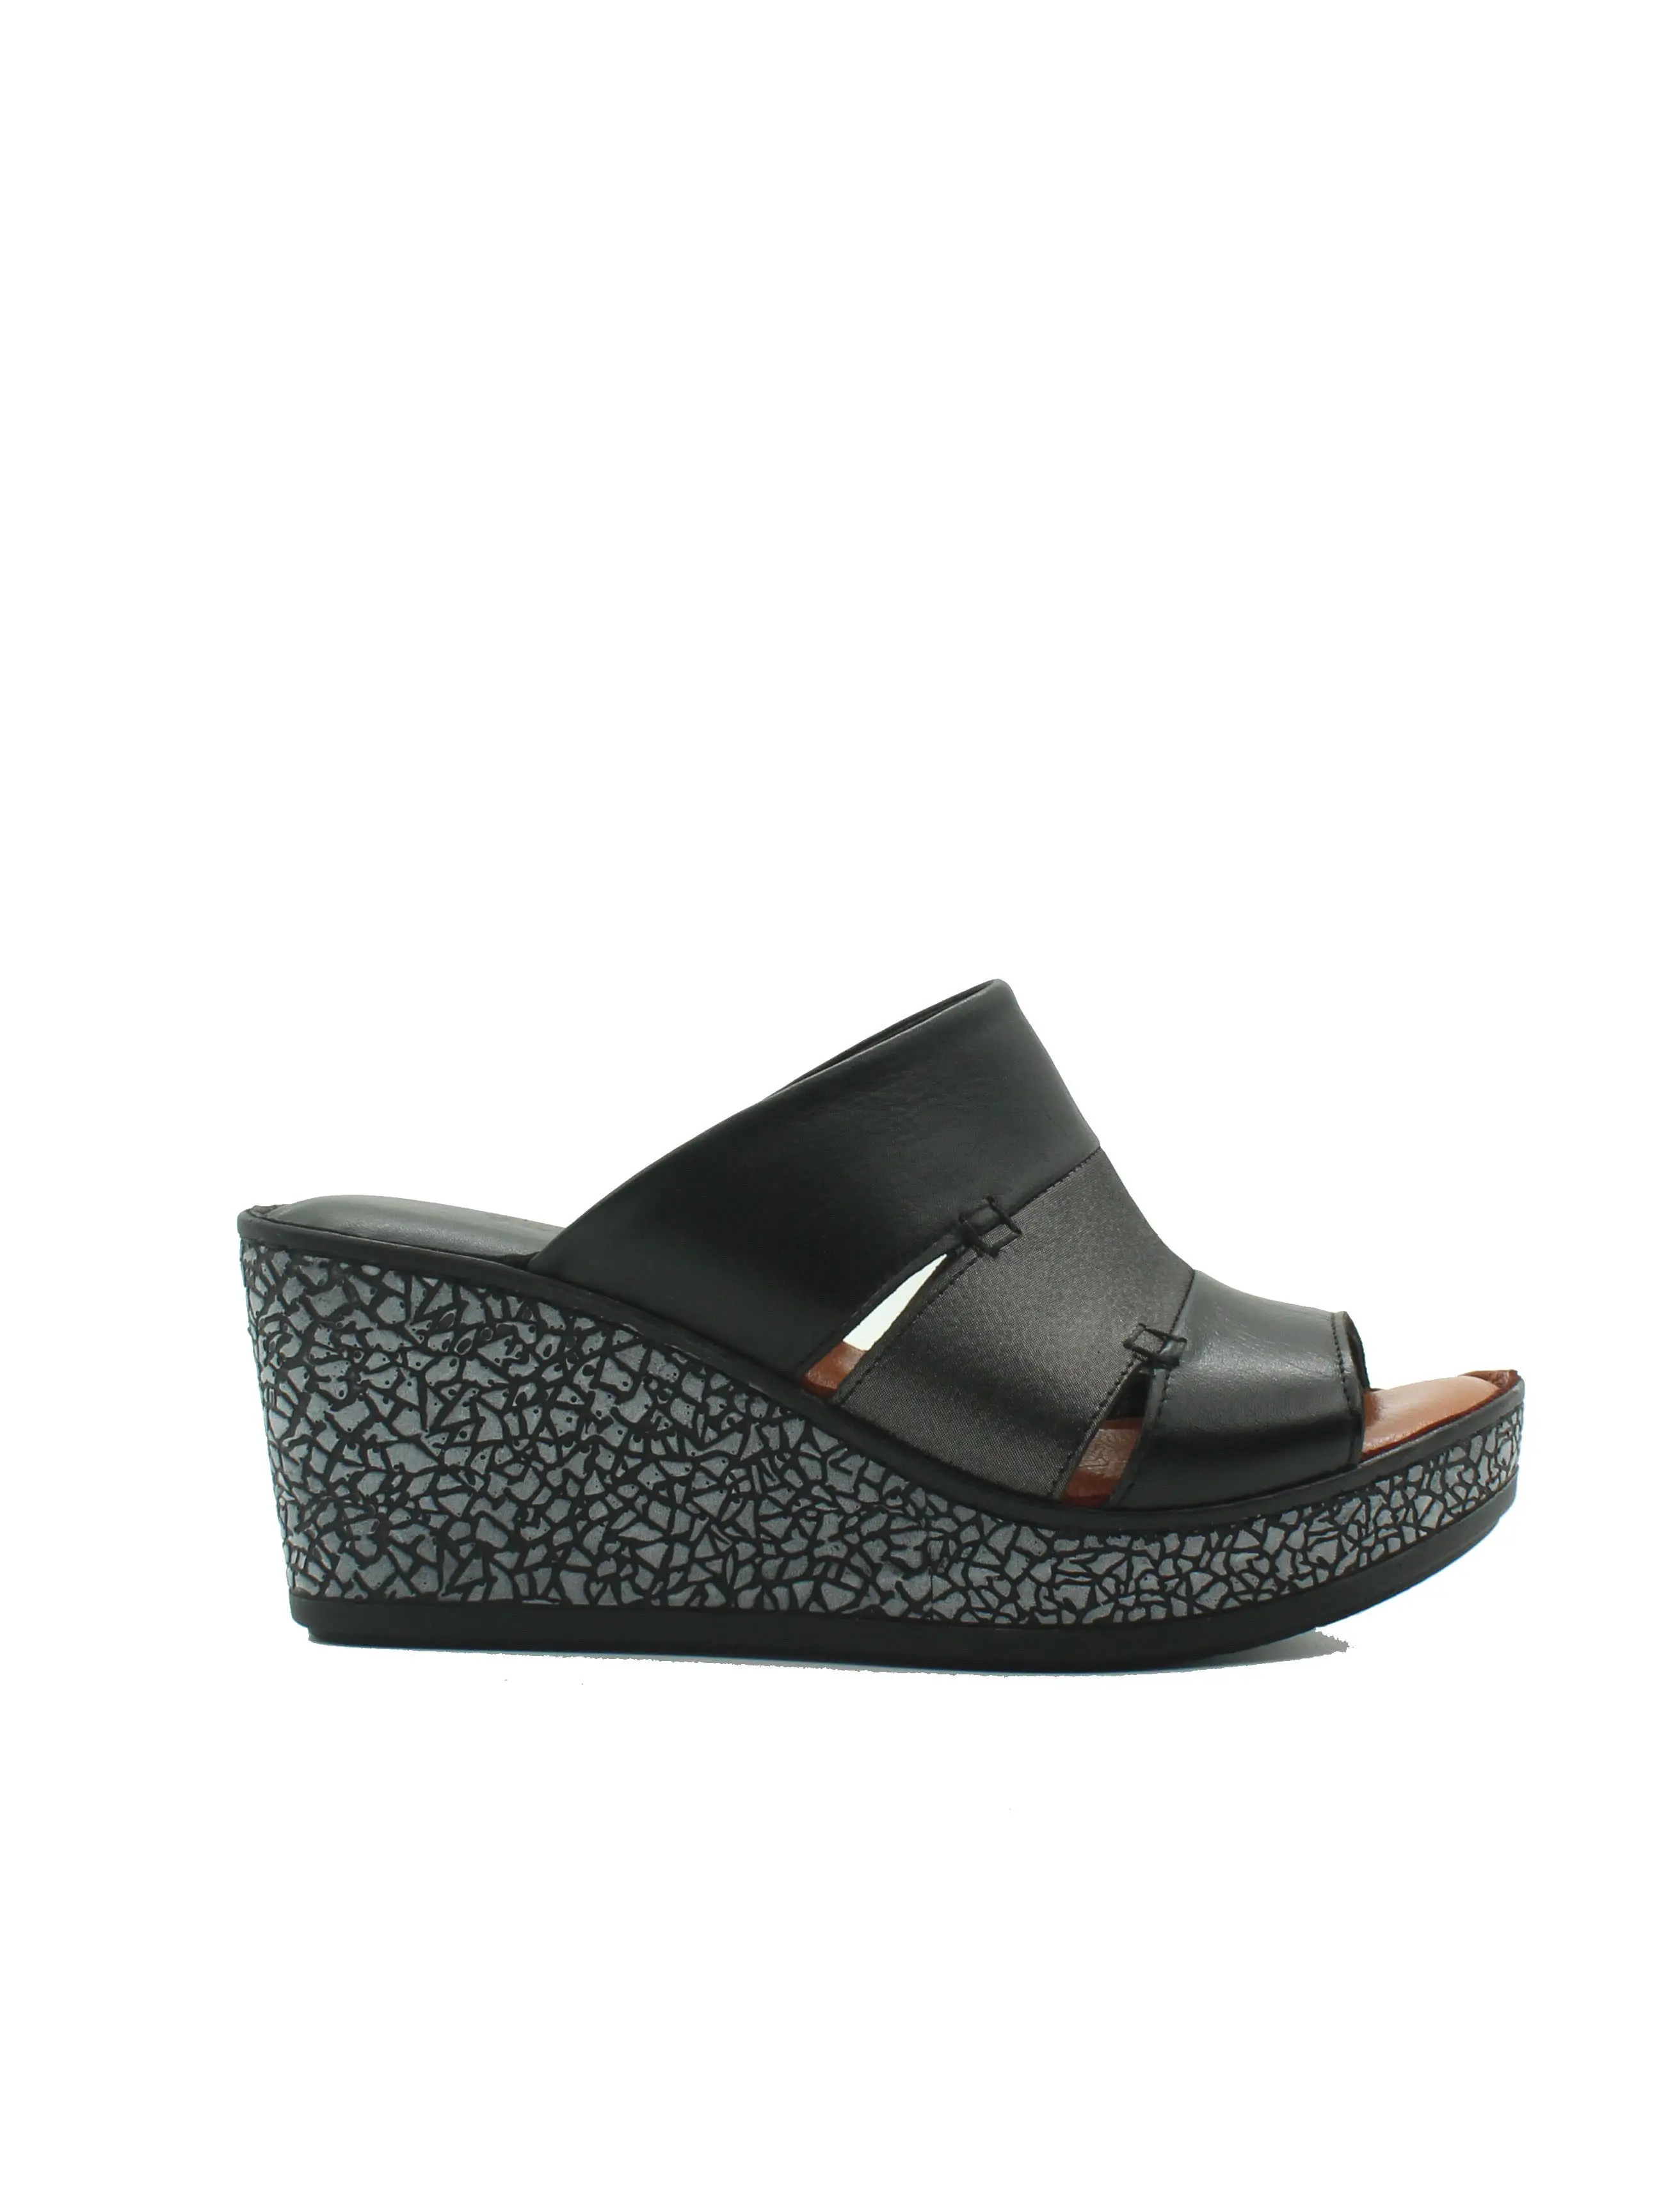 

Коллекция ülyaman-черные женские тапочки женские плоские тапочки 2020 Летняя женская обувь модели женской обуви